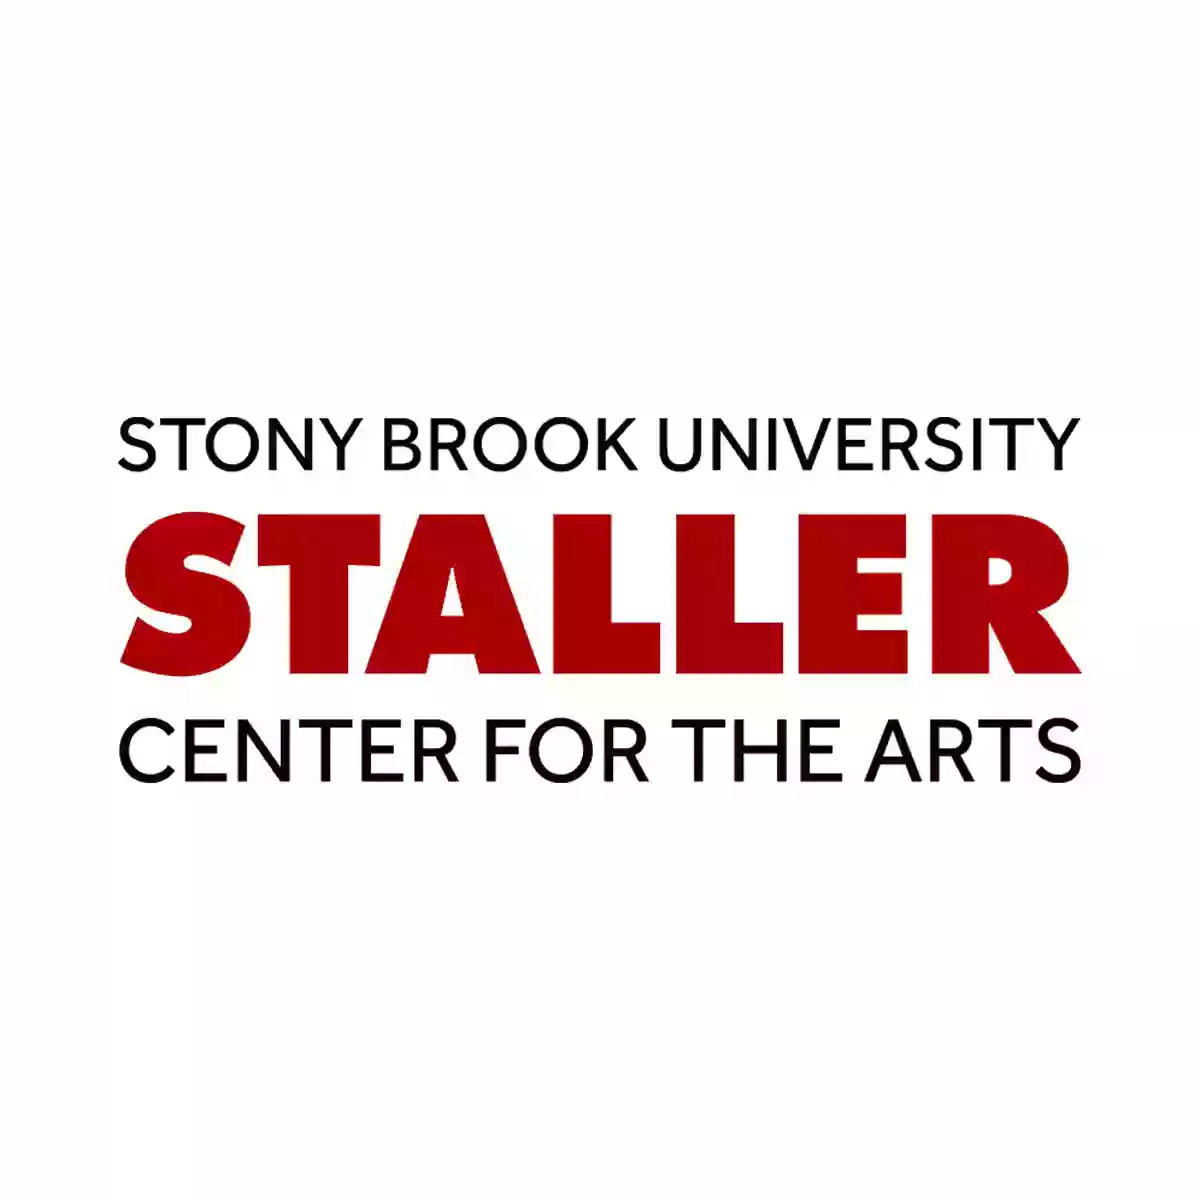 Staller Center For the Arts